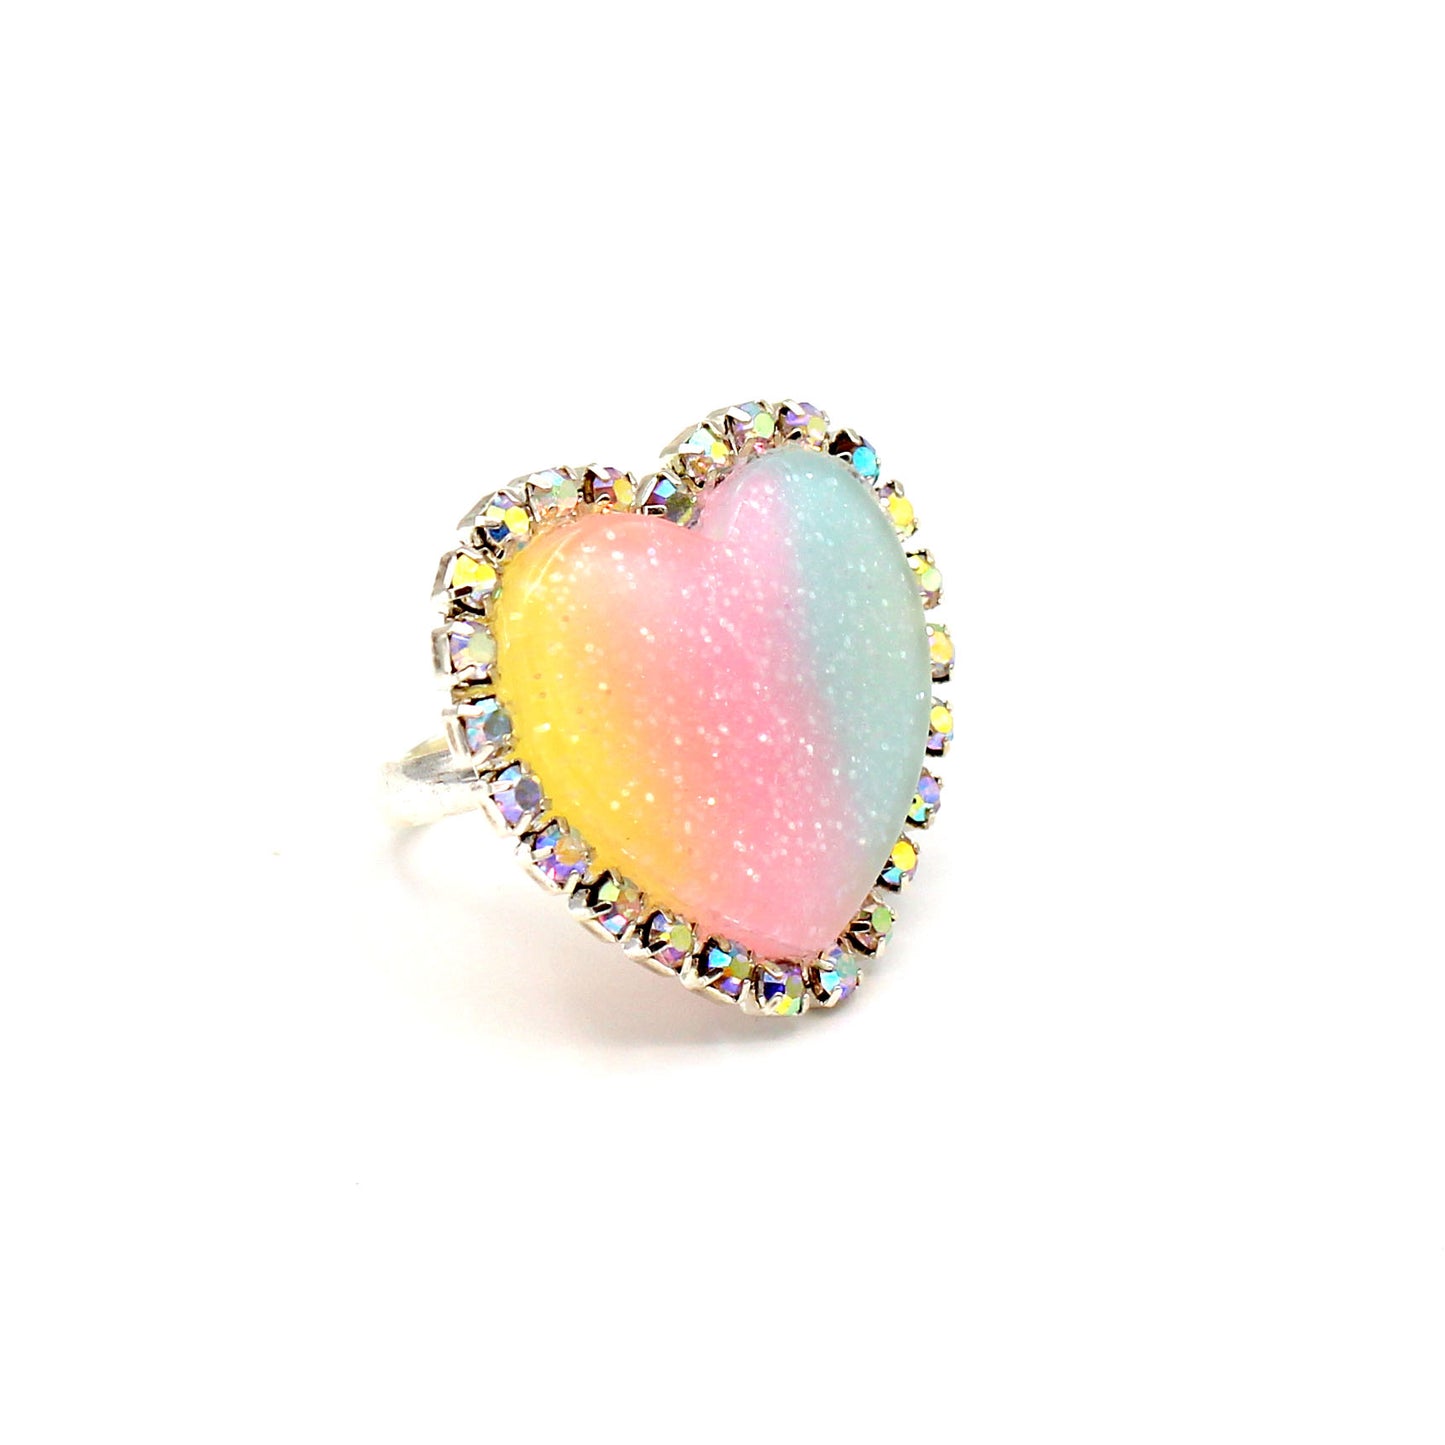 Trinket Ring - Pastel Rainbow - Adjustable